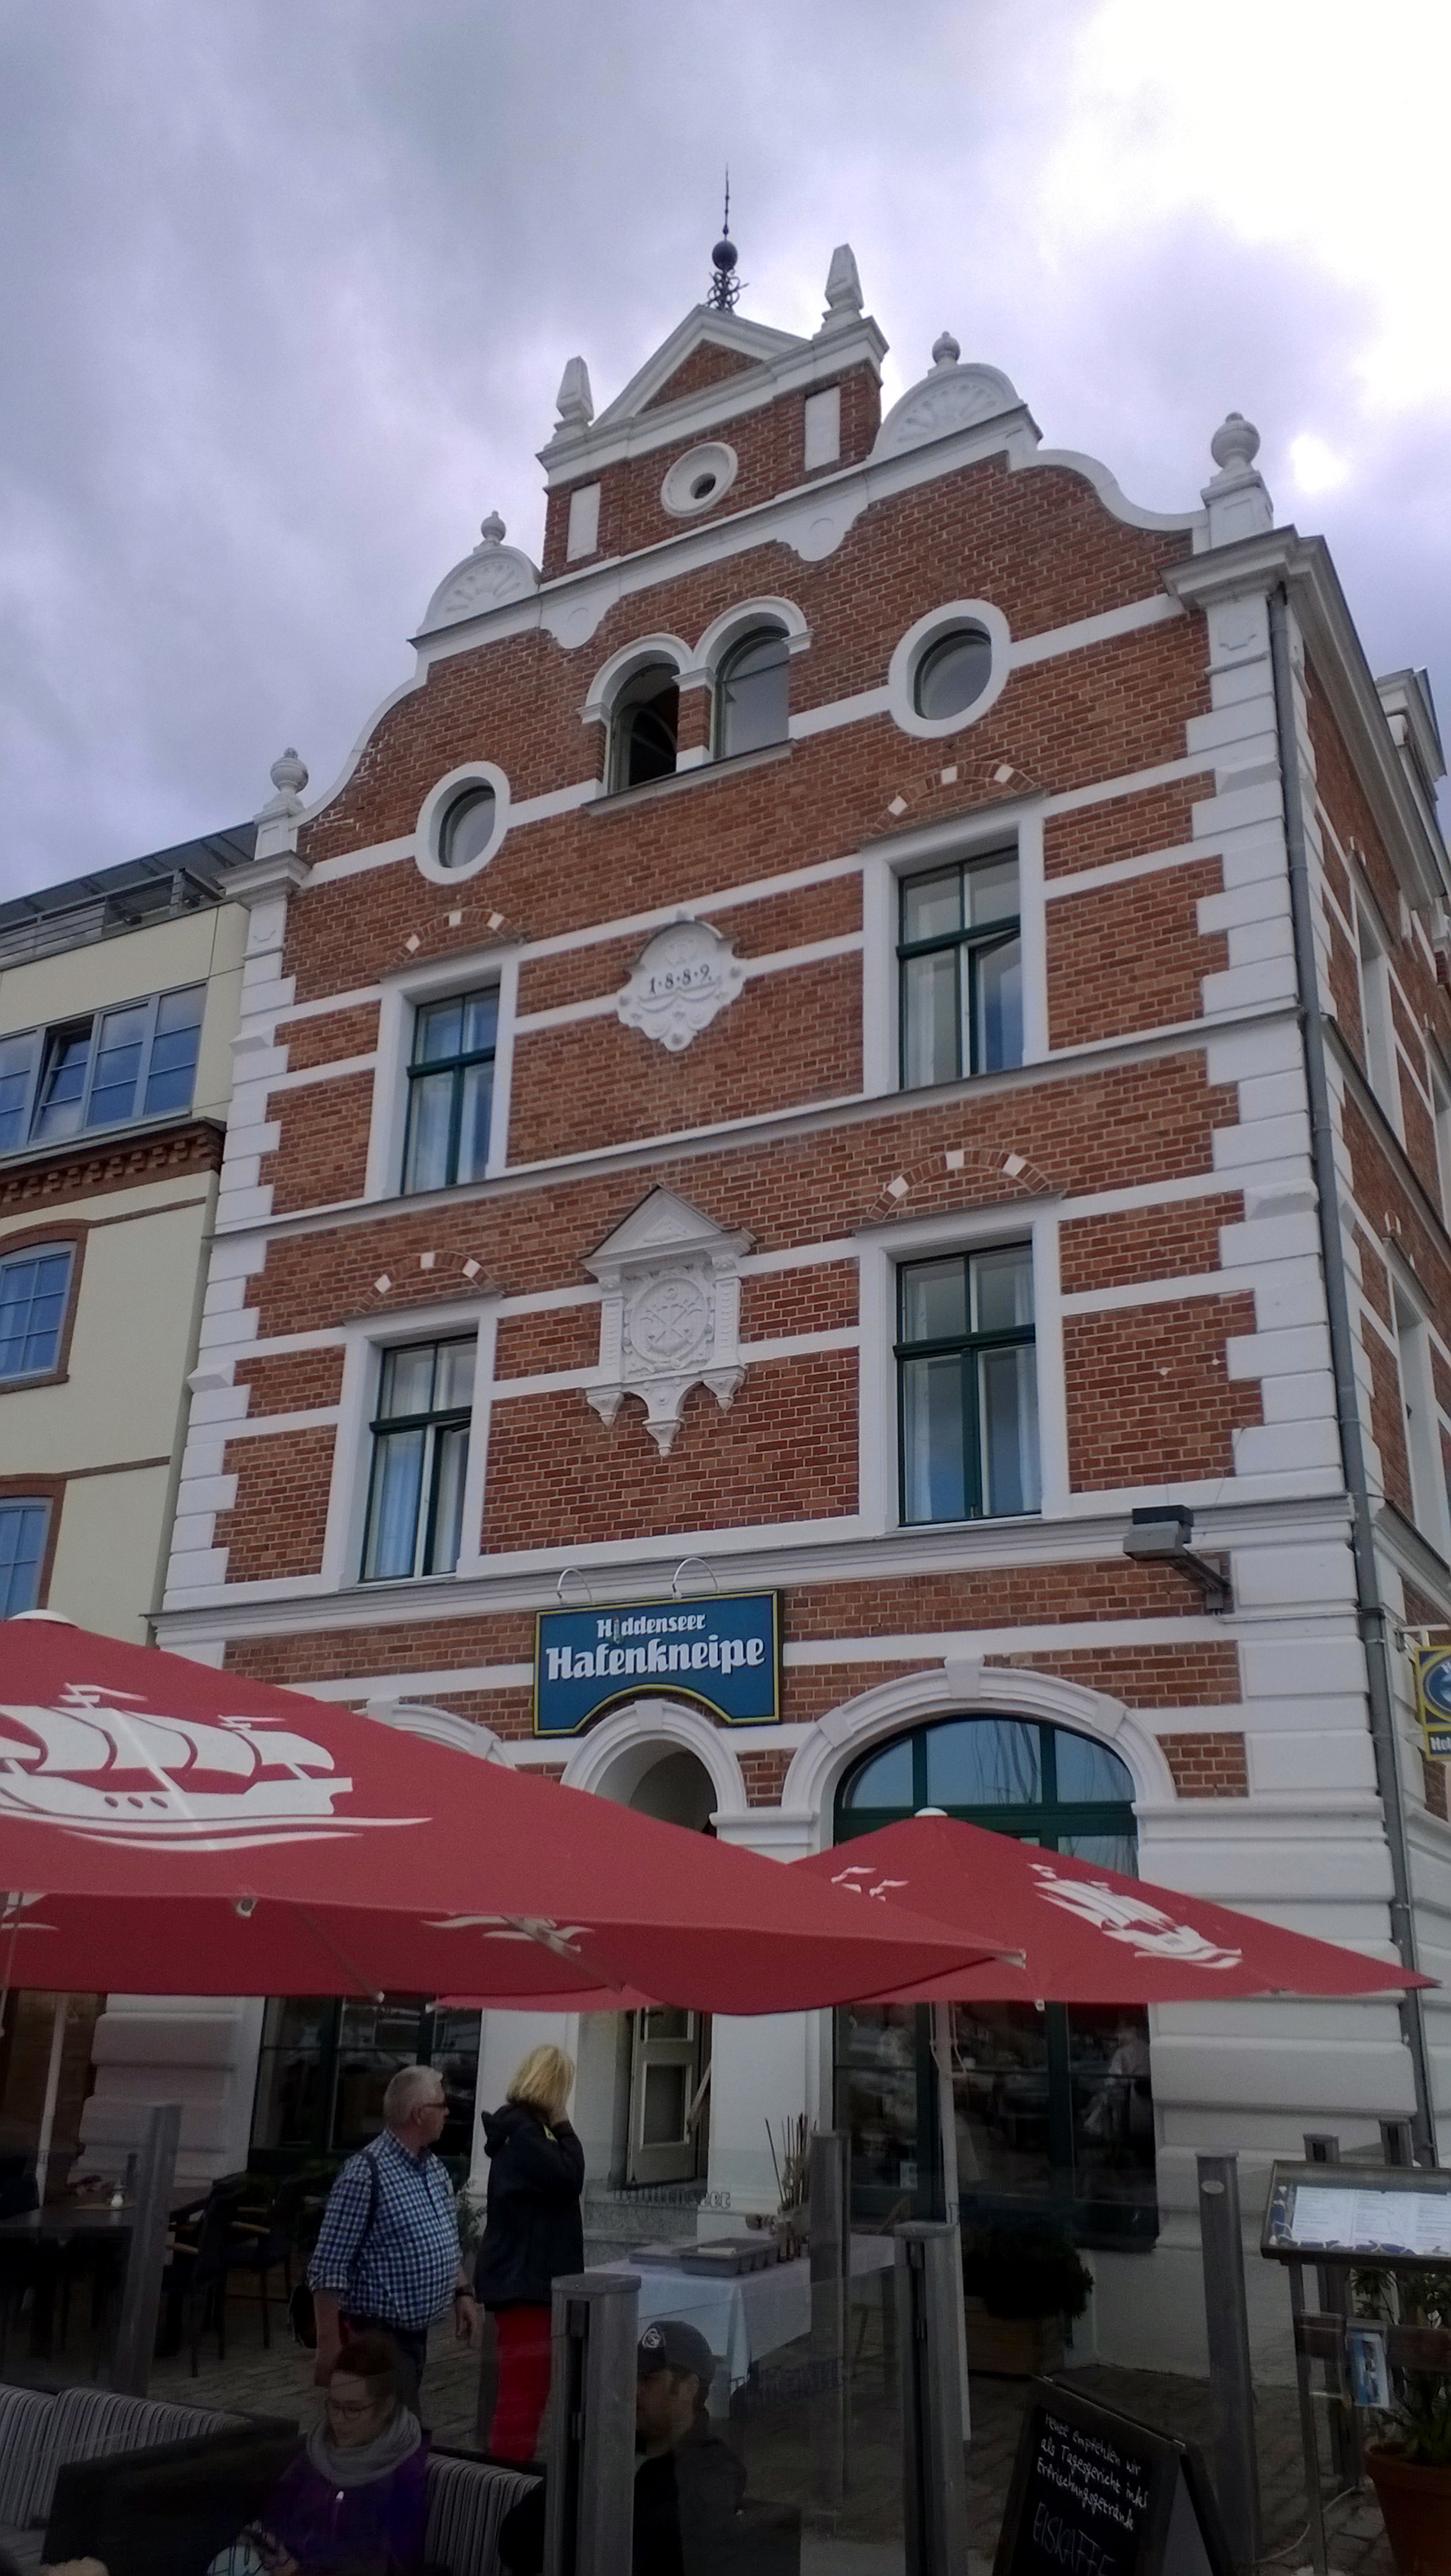 Hiddenseer Hotel und Hafenkneipe, Stralsund.
